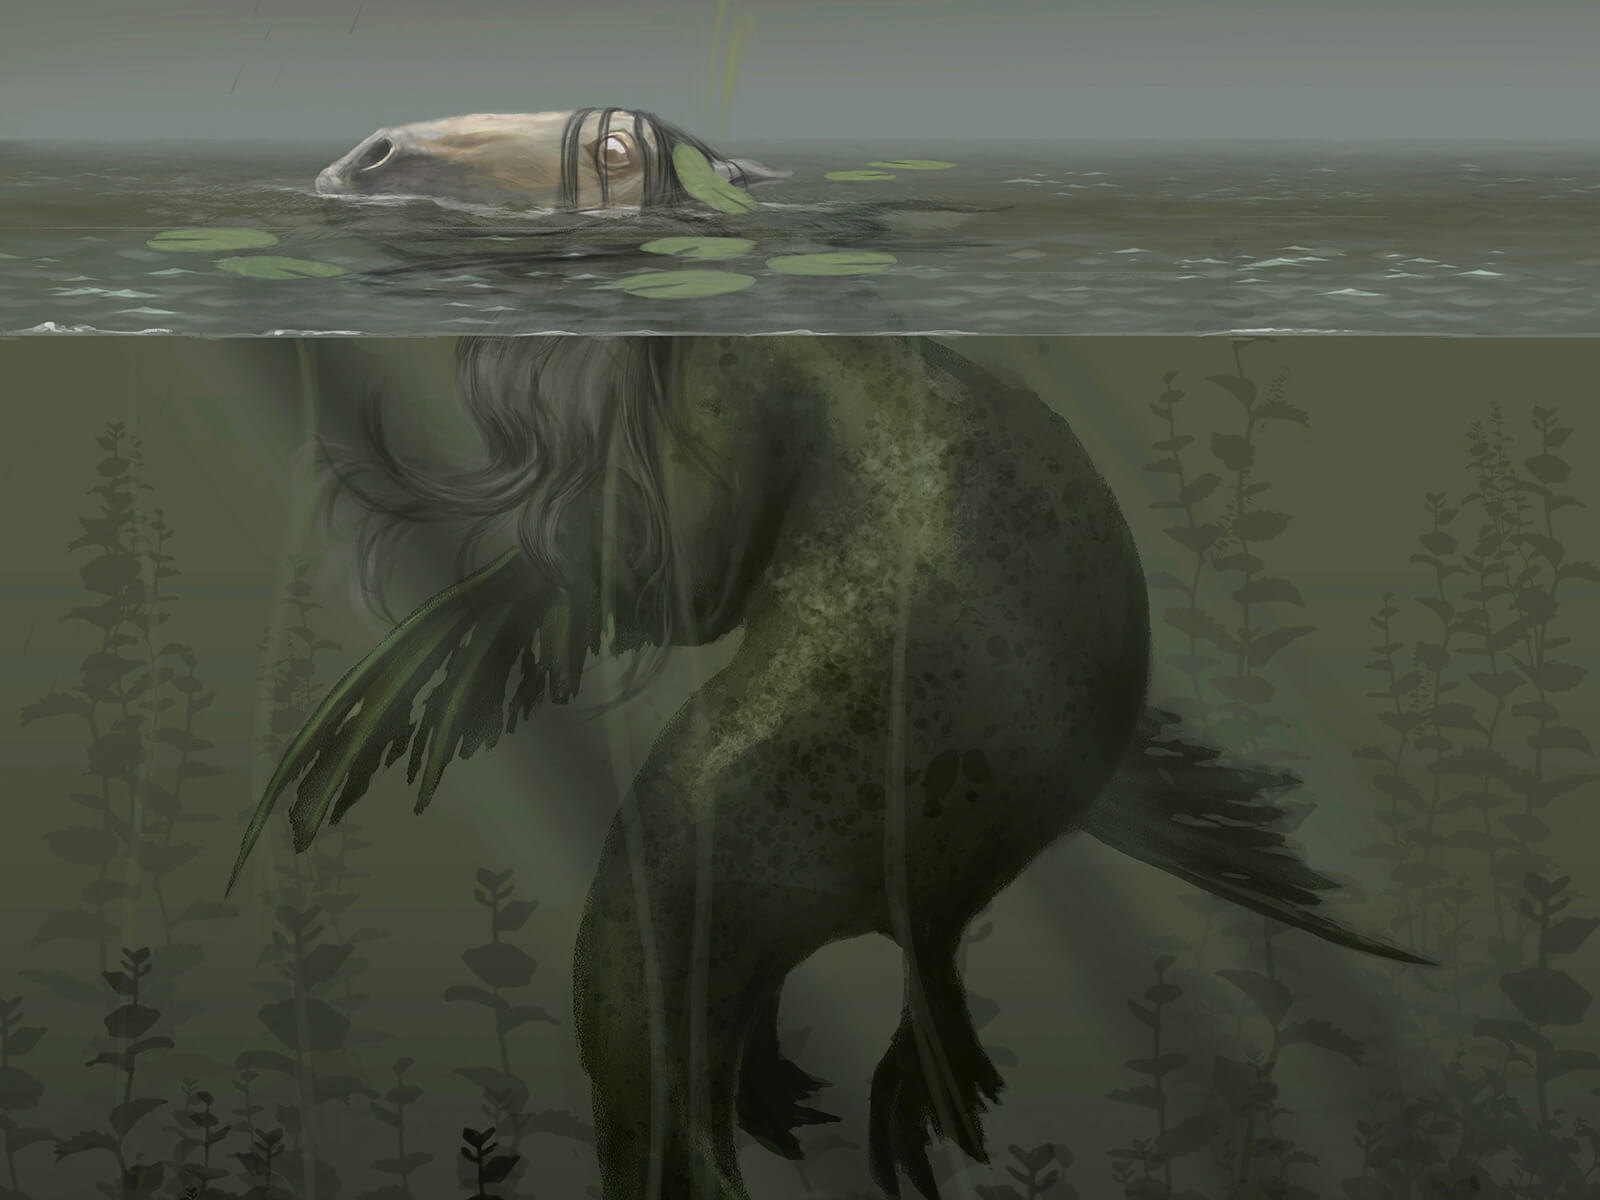 Lo que parece ser la cabeza de un caballo asoma por encima de la superficie de un lago, pero una criatura parecida a una babosa marina verde acecha debajo.